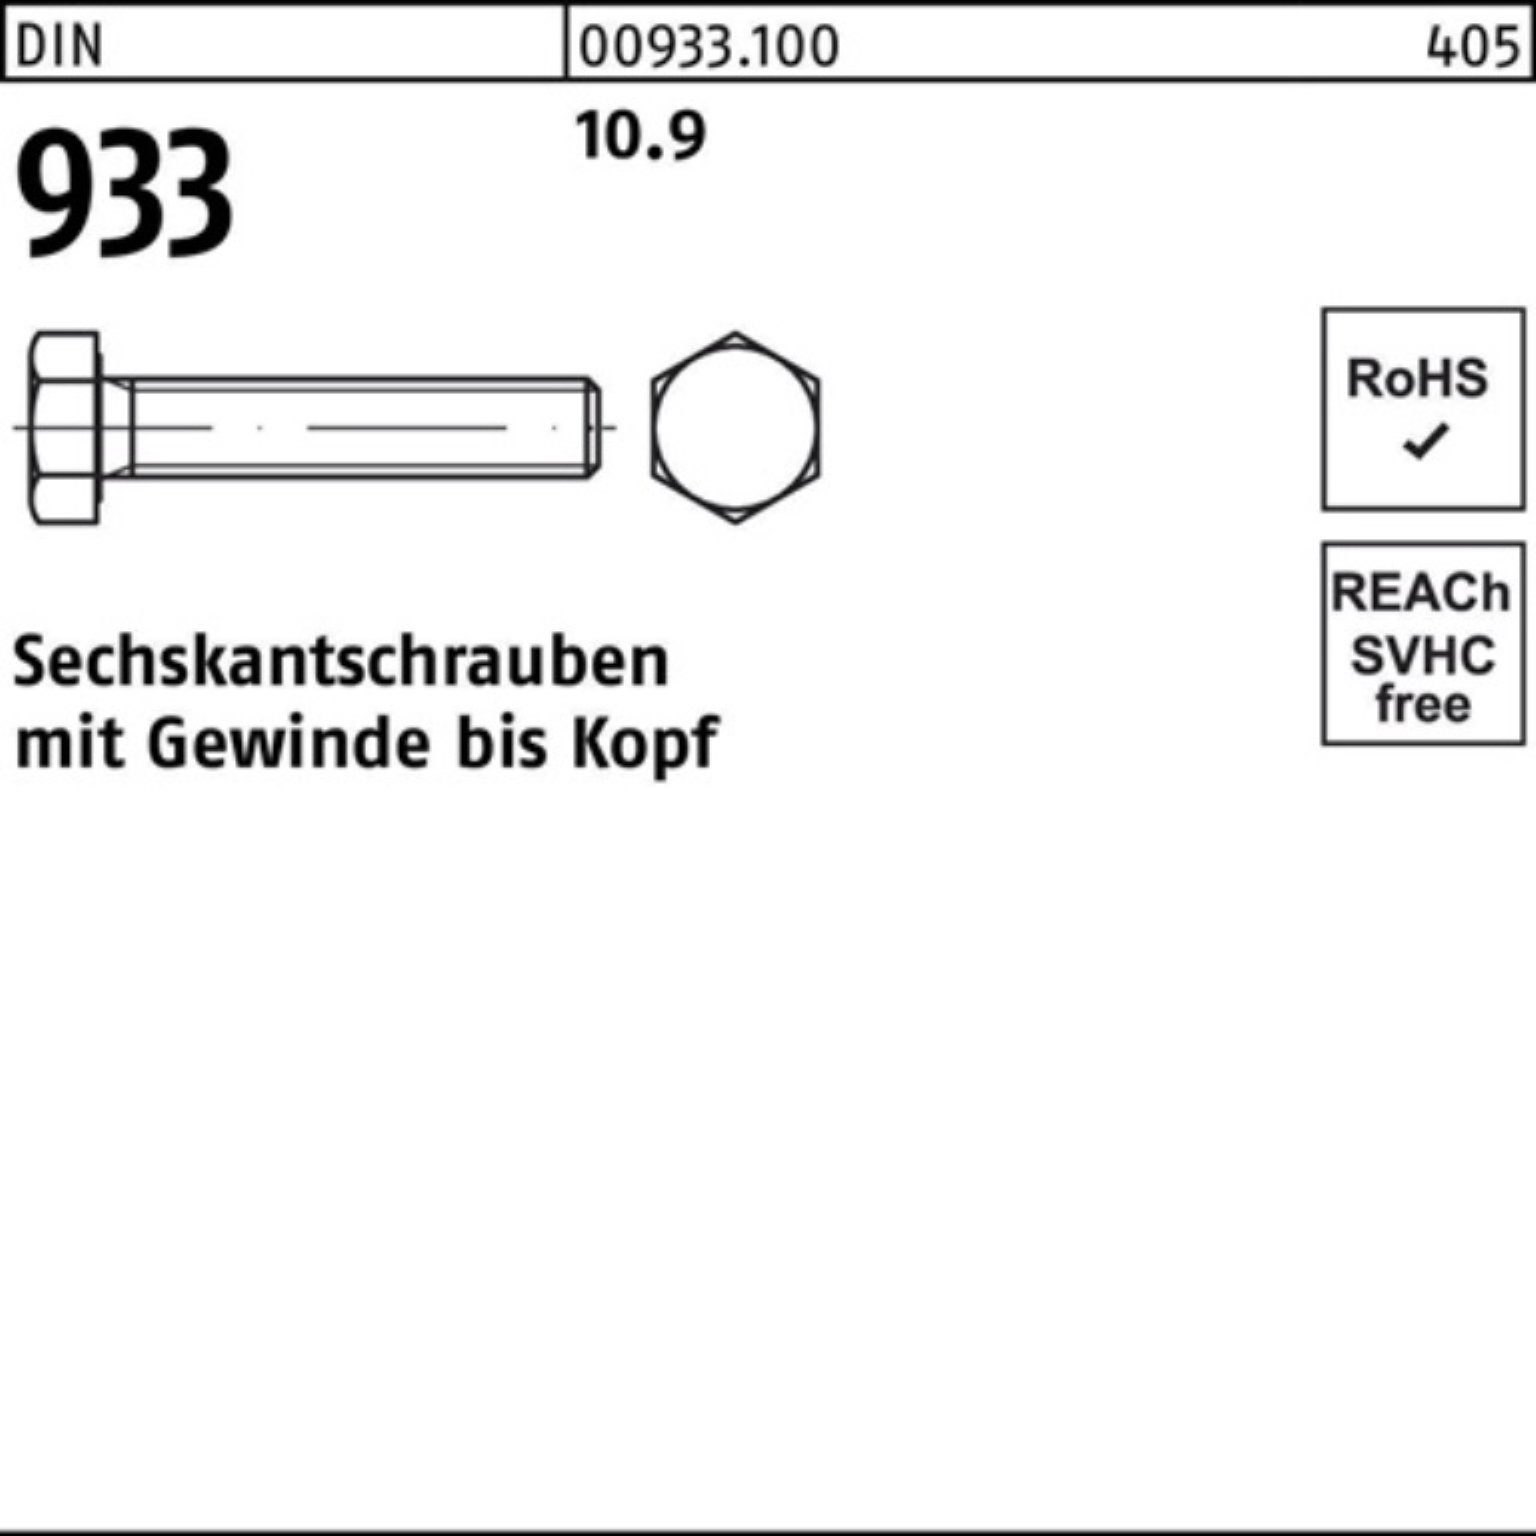 Reyher Sechskantschraube 100er Pack 10.9 Stück 110 M24x 10 DIN DIN VG Sechskantschraube 93 933